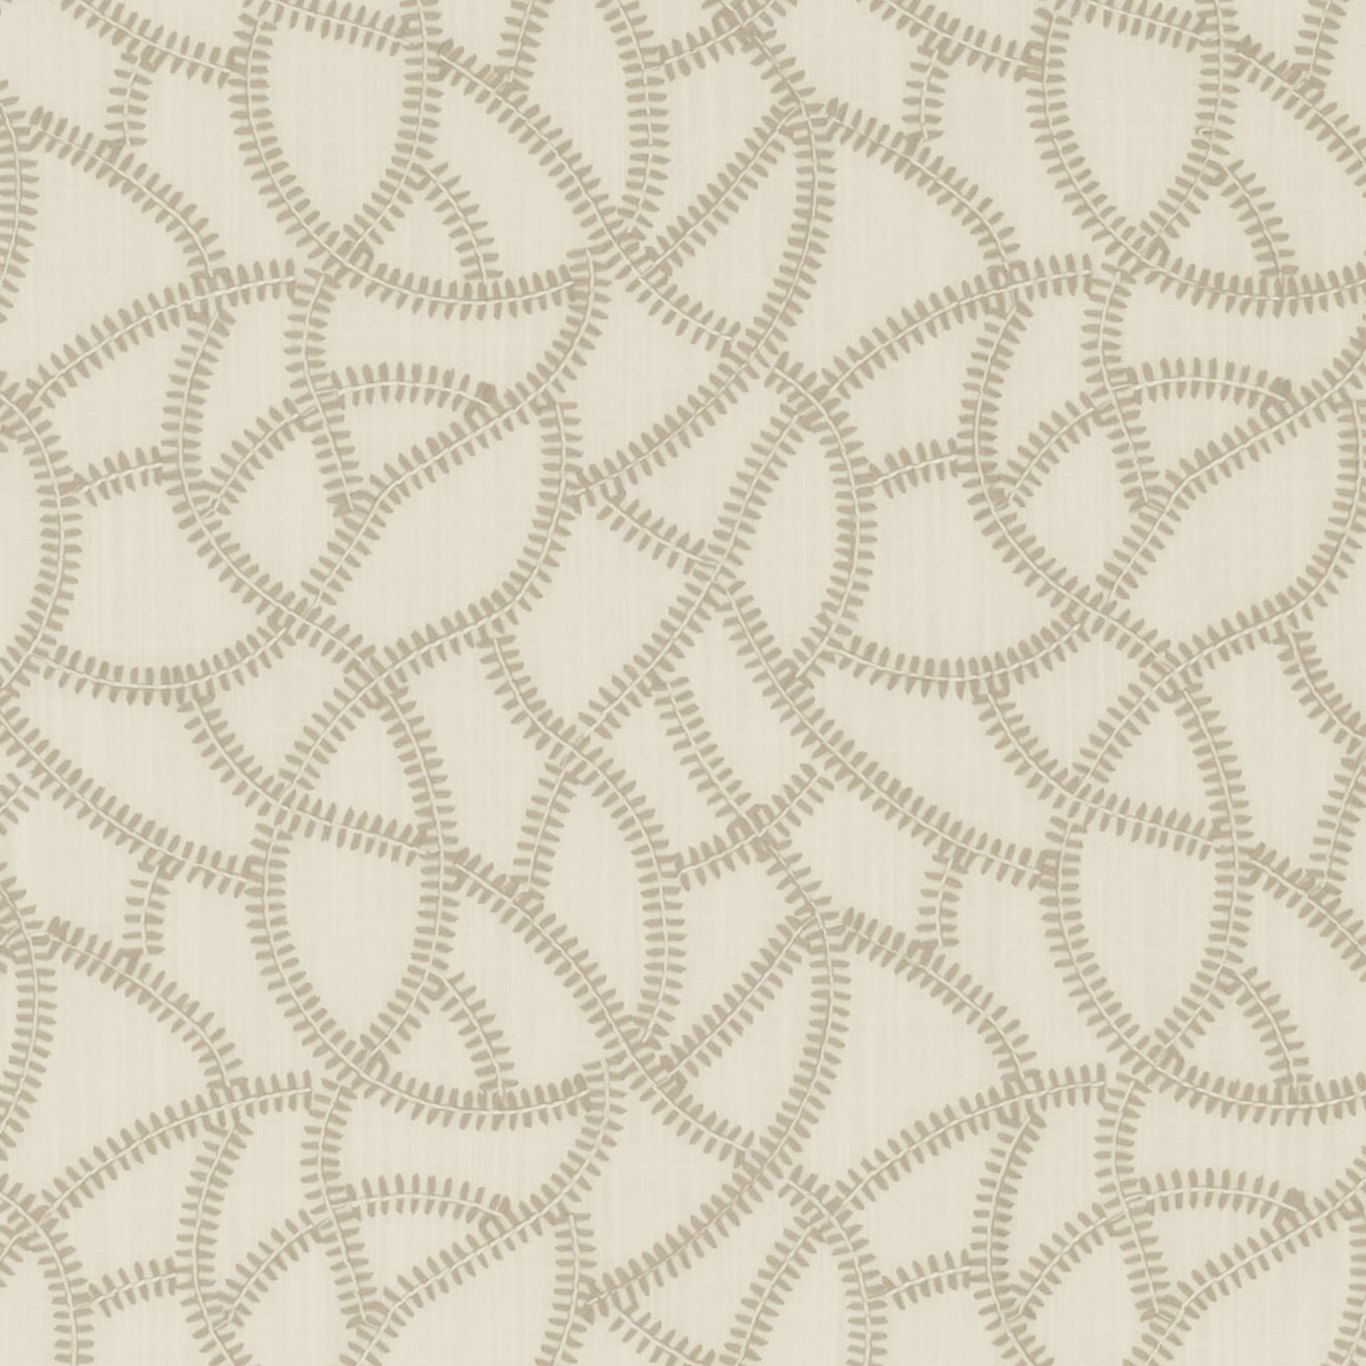 Panache Ivory Fabric by CNC